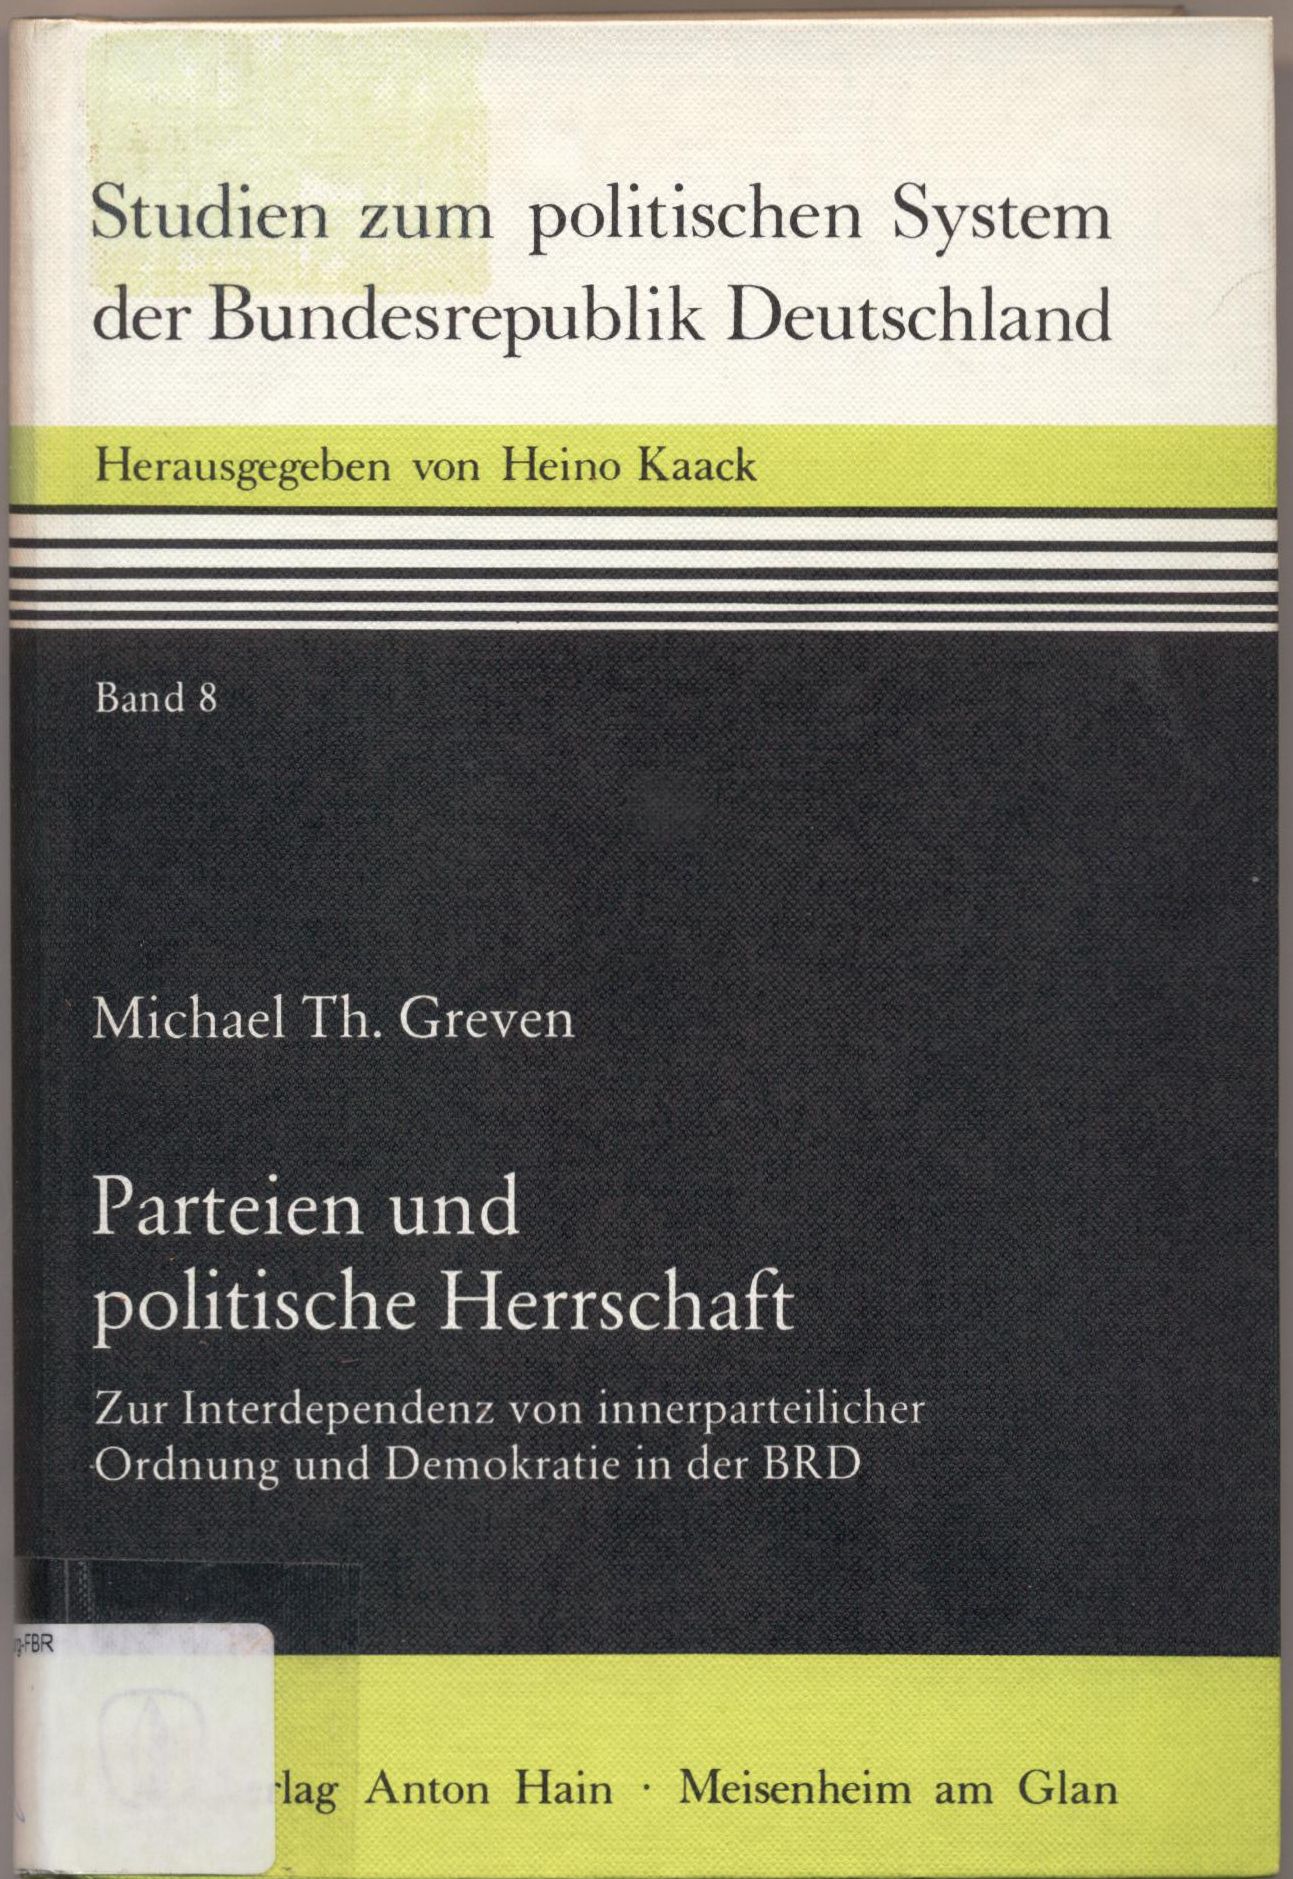 Parteien und politische Herrschaft Zur Interpendenz von innerparteilicher Ordnung und Demokratie in der BRD - Greven, Michael Th.